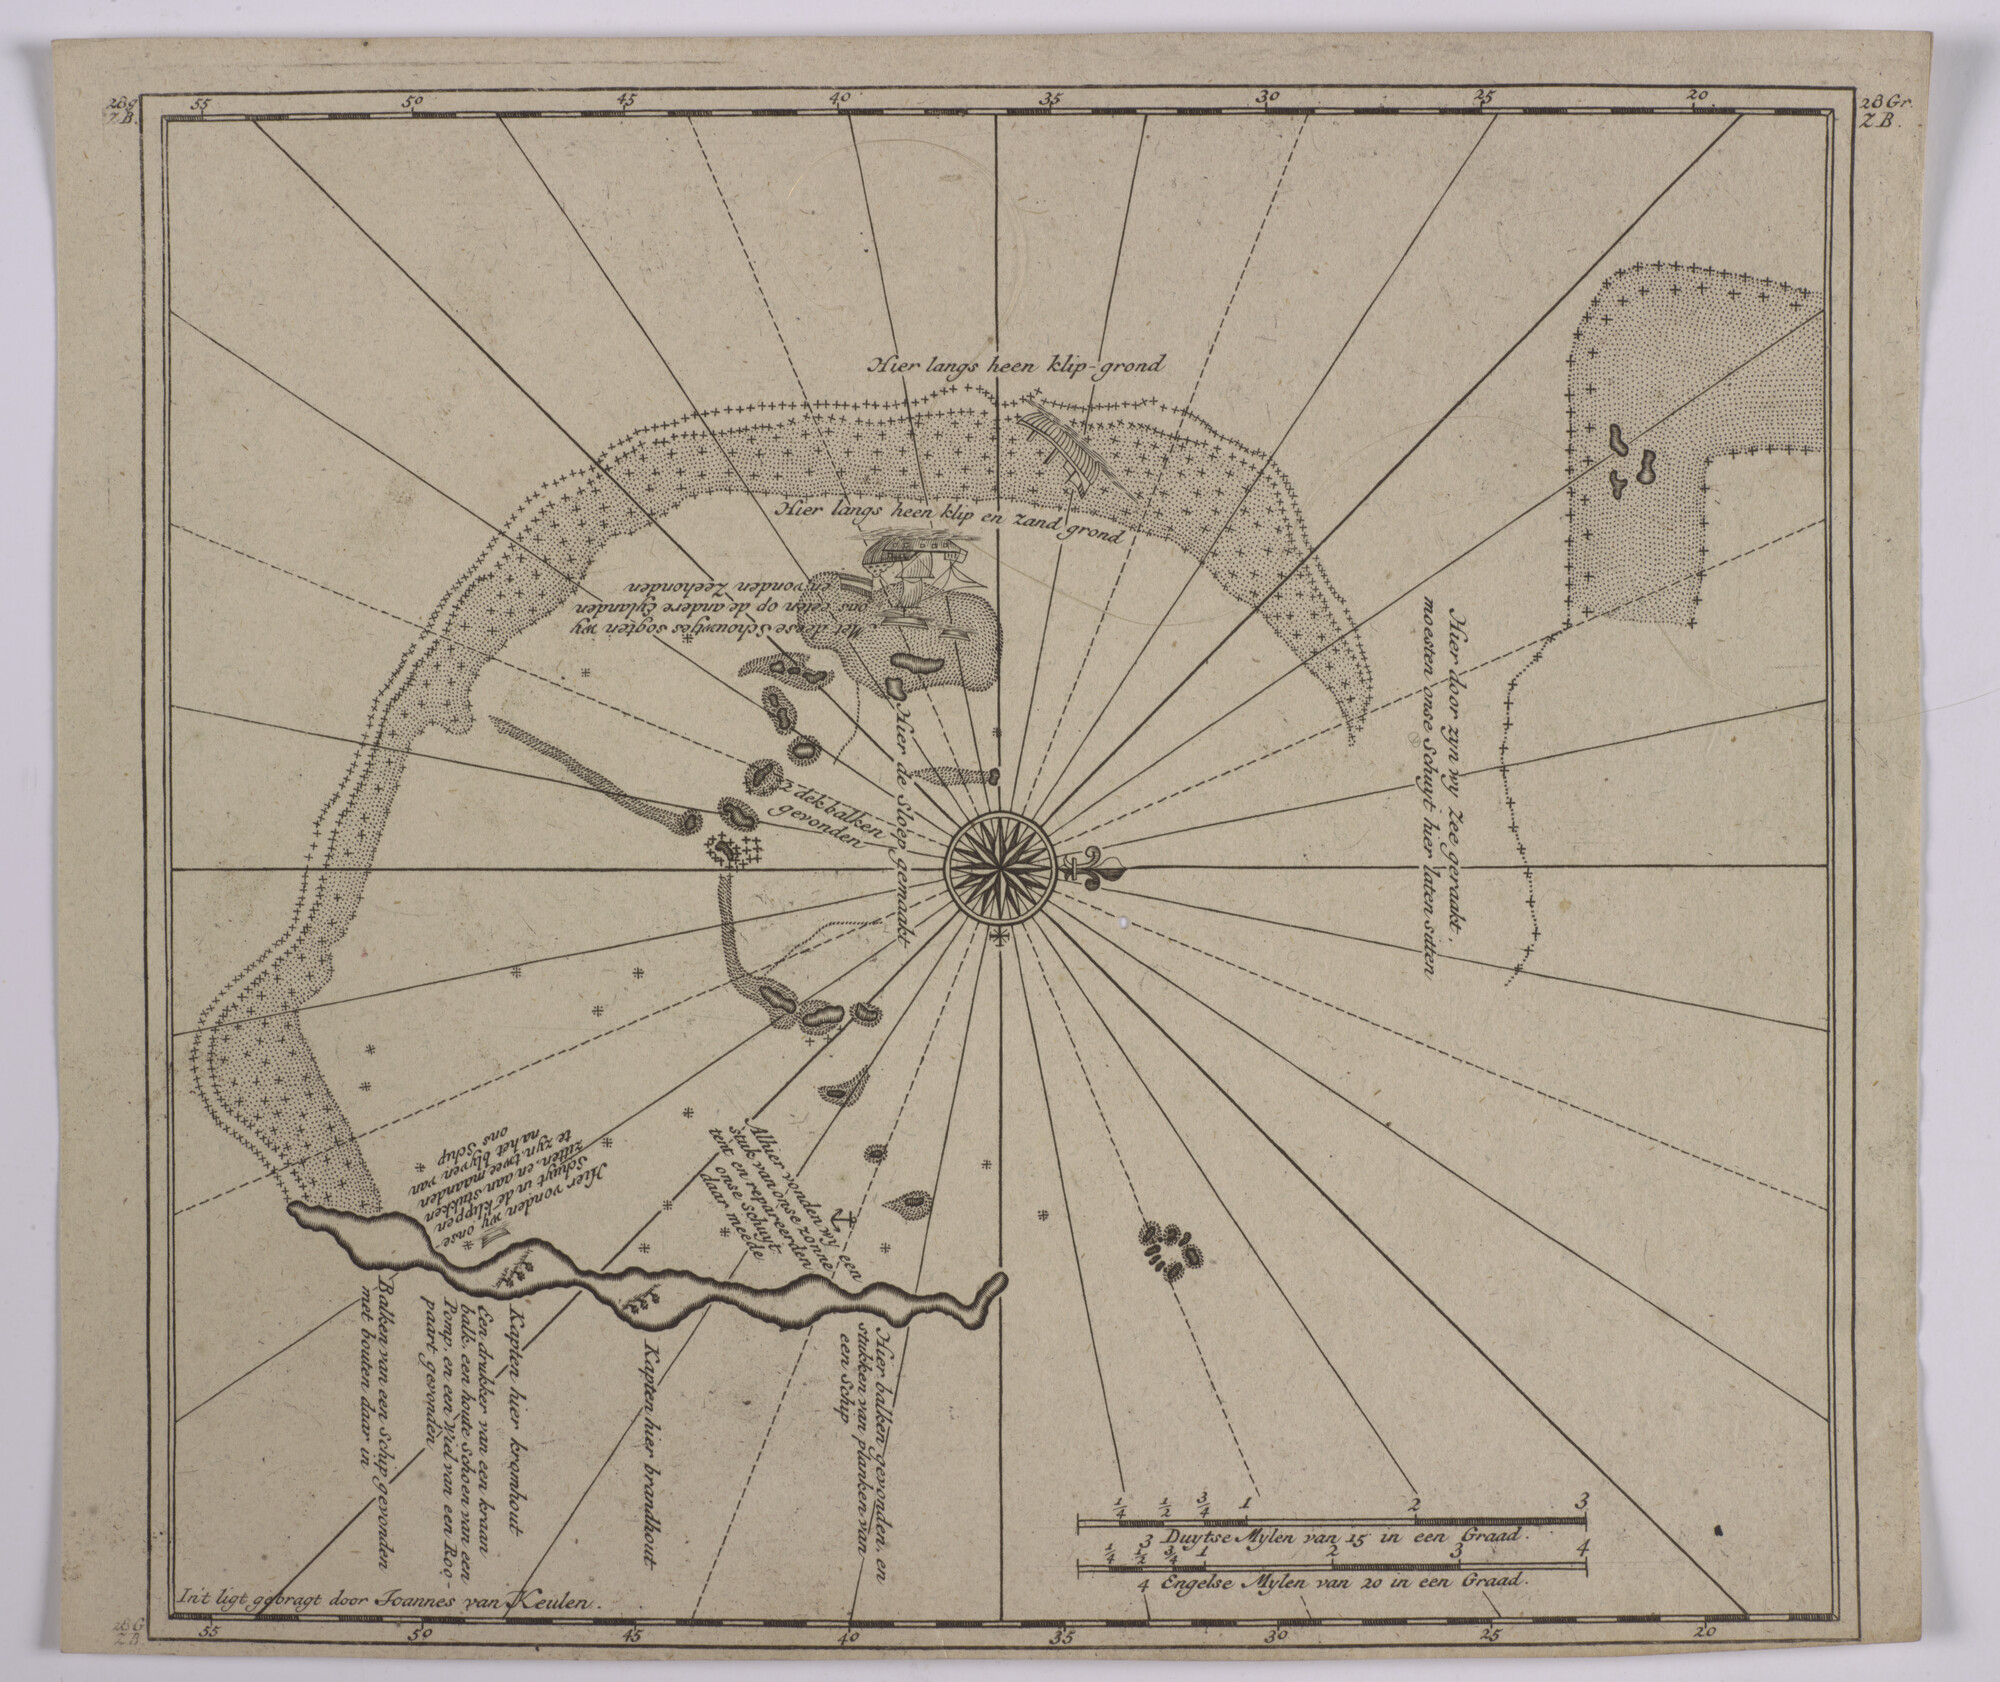 S.0966(23); Detailkaart van de atol de Pelsaert Groep in de Houtman Abrolhos, met teksten over de ervaringen van de schipbreukelingen van de Zeewijk in 1727; kaart